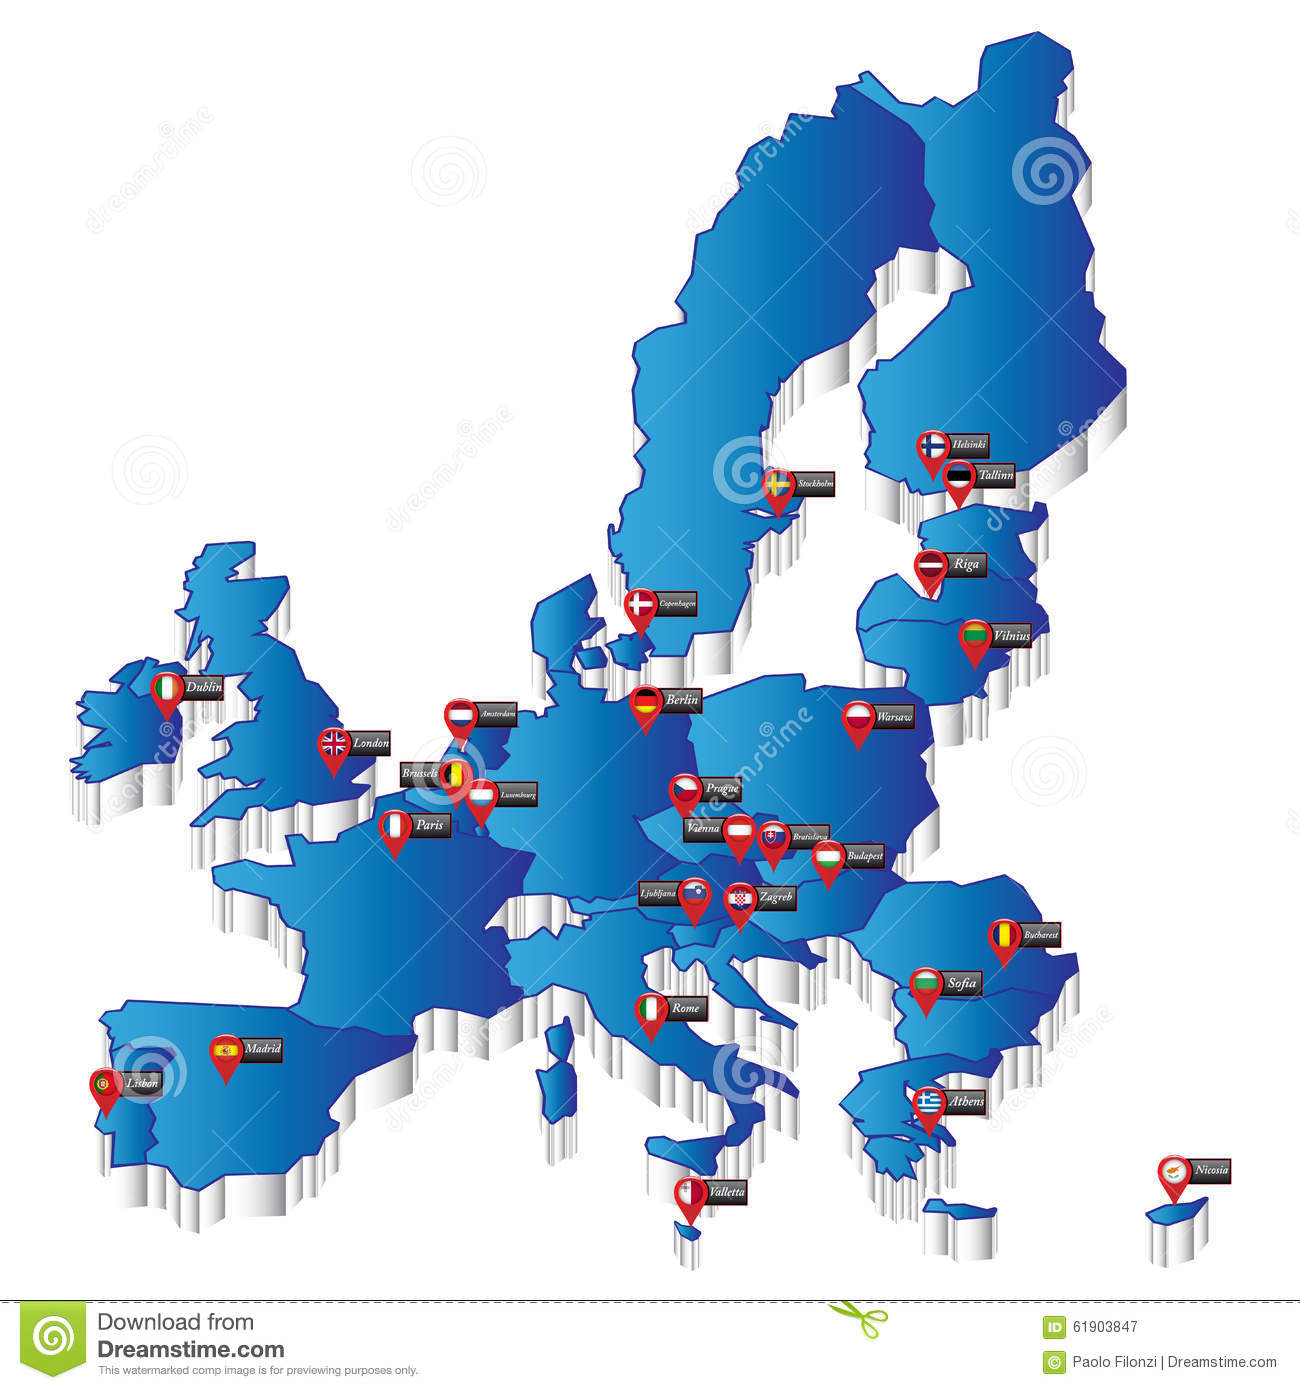 Carte De L&amp;#039;europe Avec Des Indicateurs De Capital Image intérieur Carte D Europe Capitale 